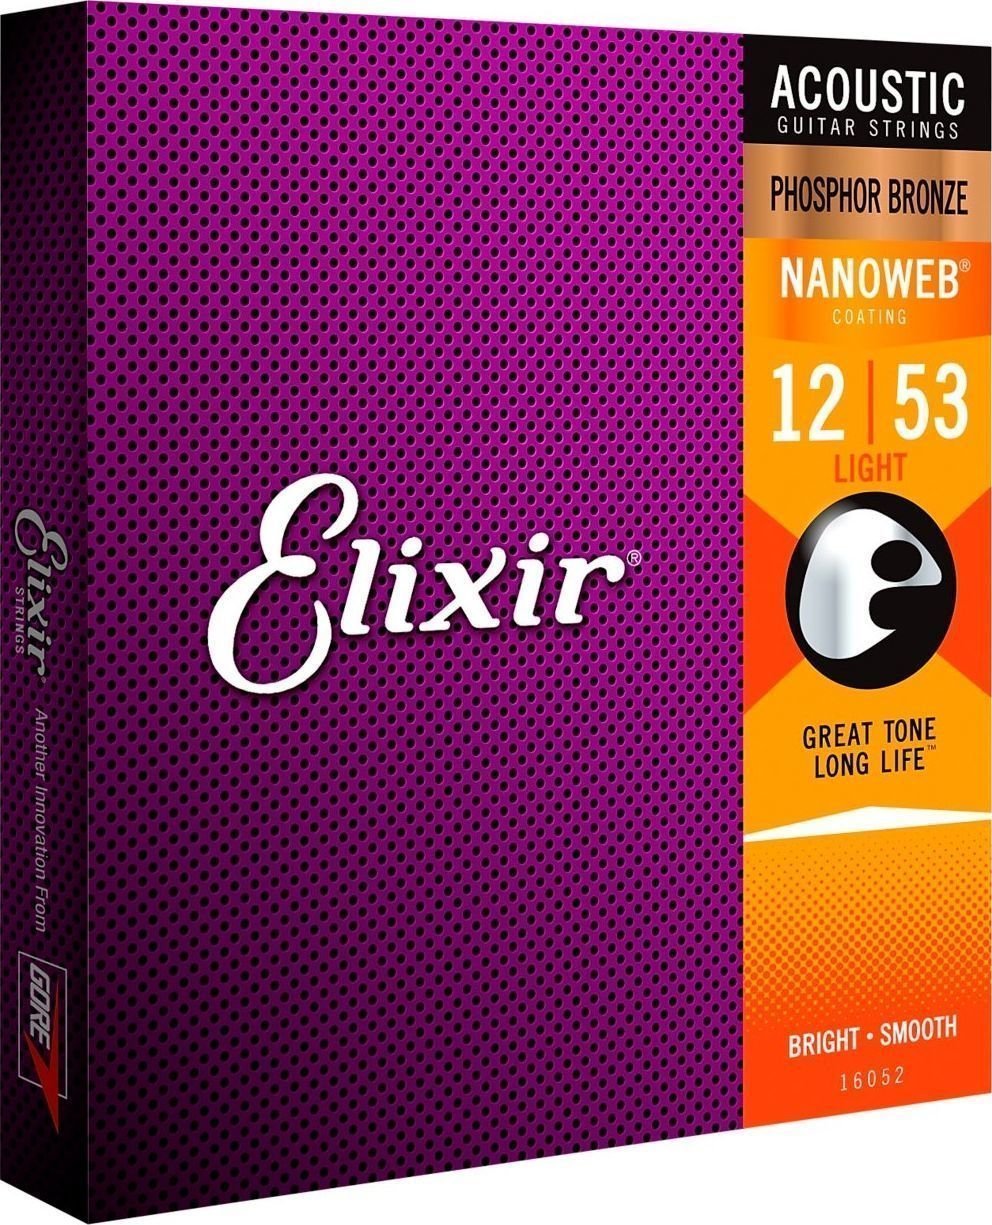 Snaren voor akoestische gitaar Elixir 16052 Nanoweb 12-53